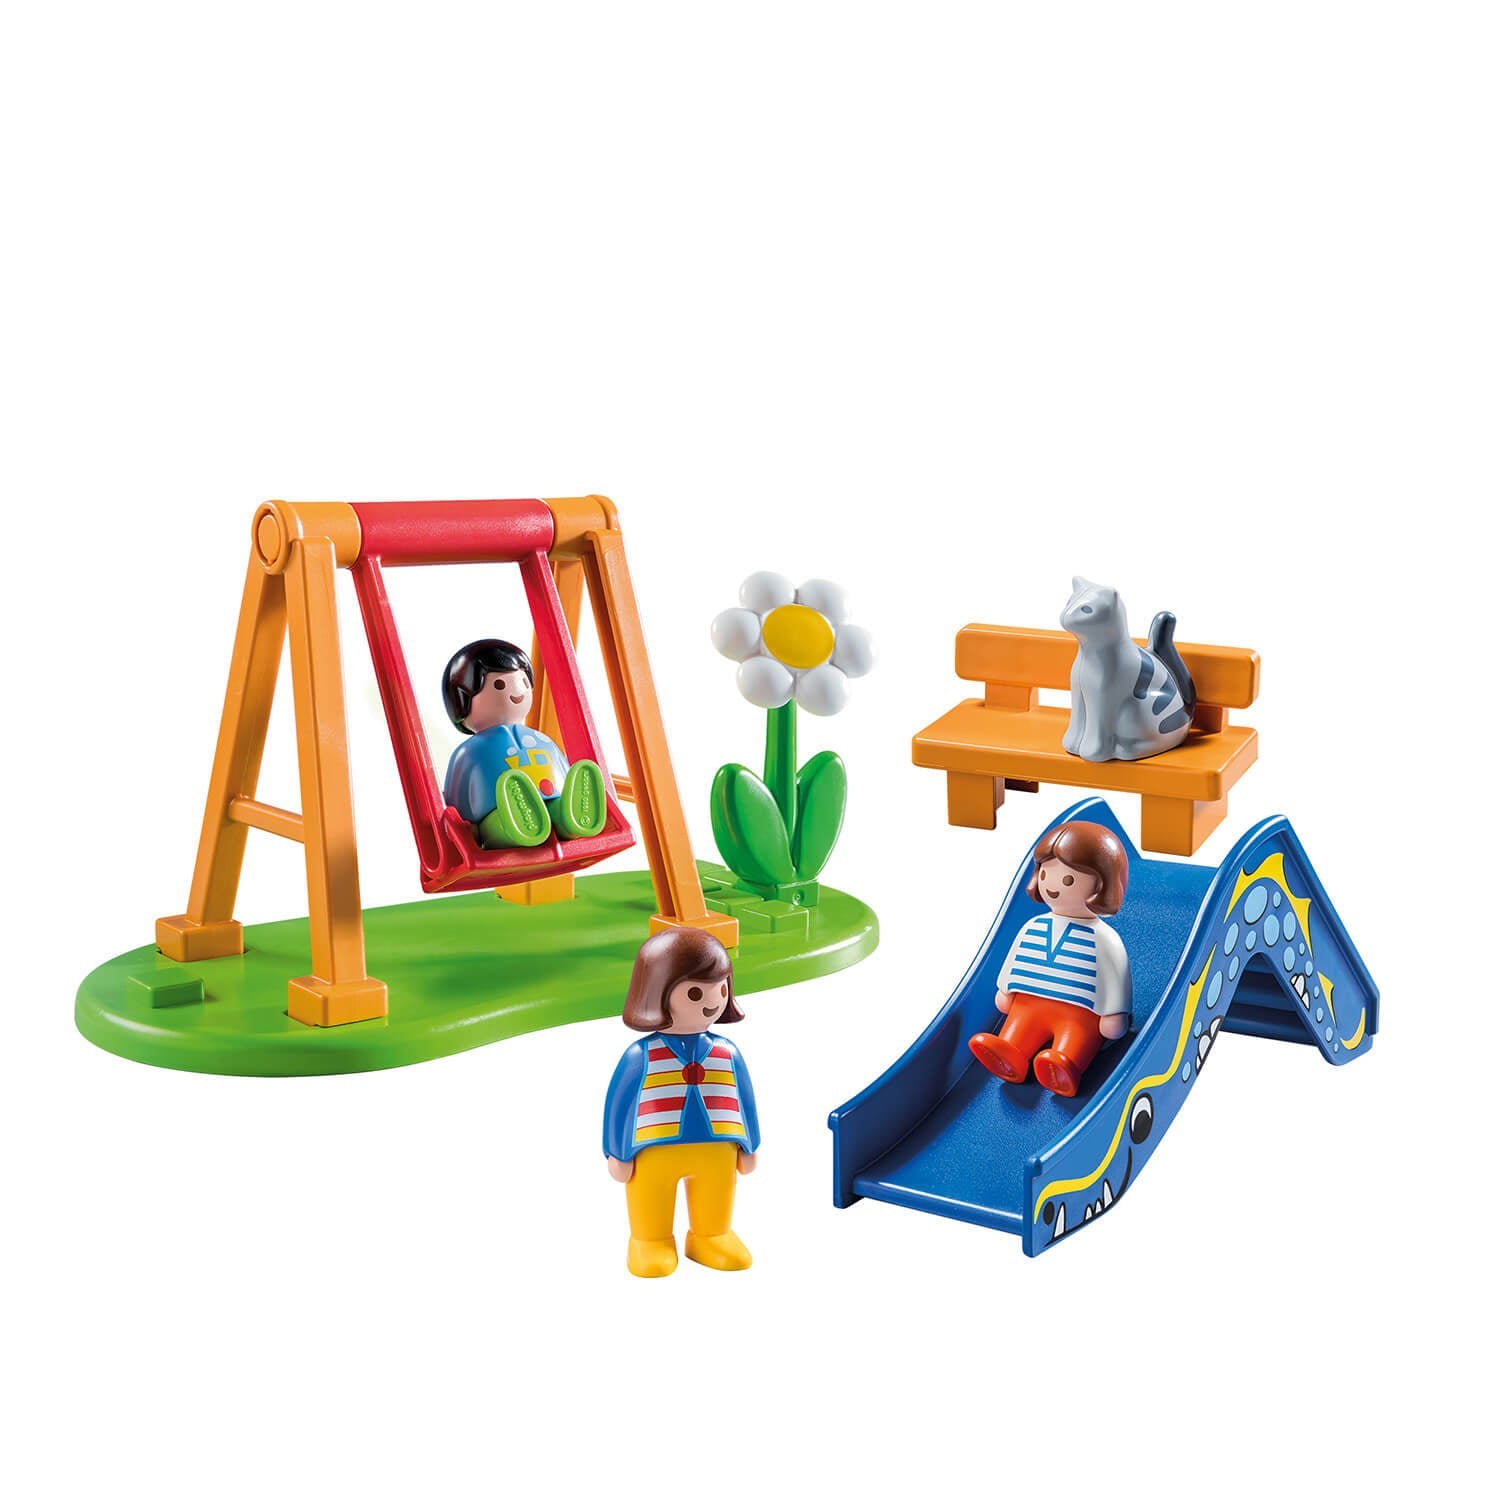 PLAYMOBIL 1.2.3 Children's Playground (70130)